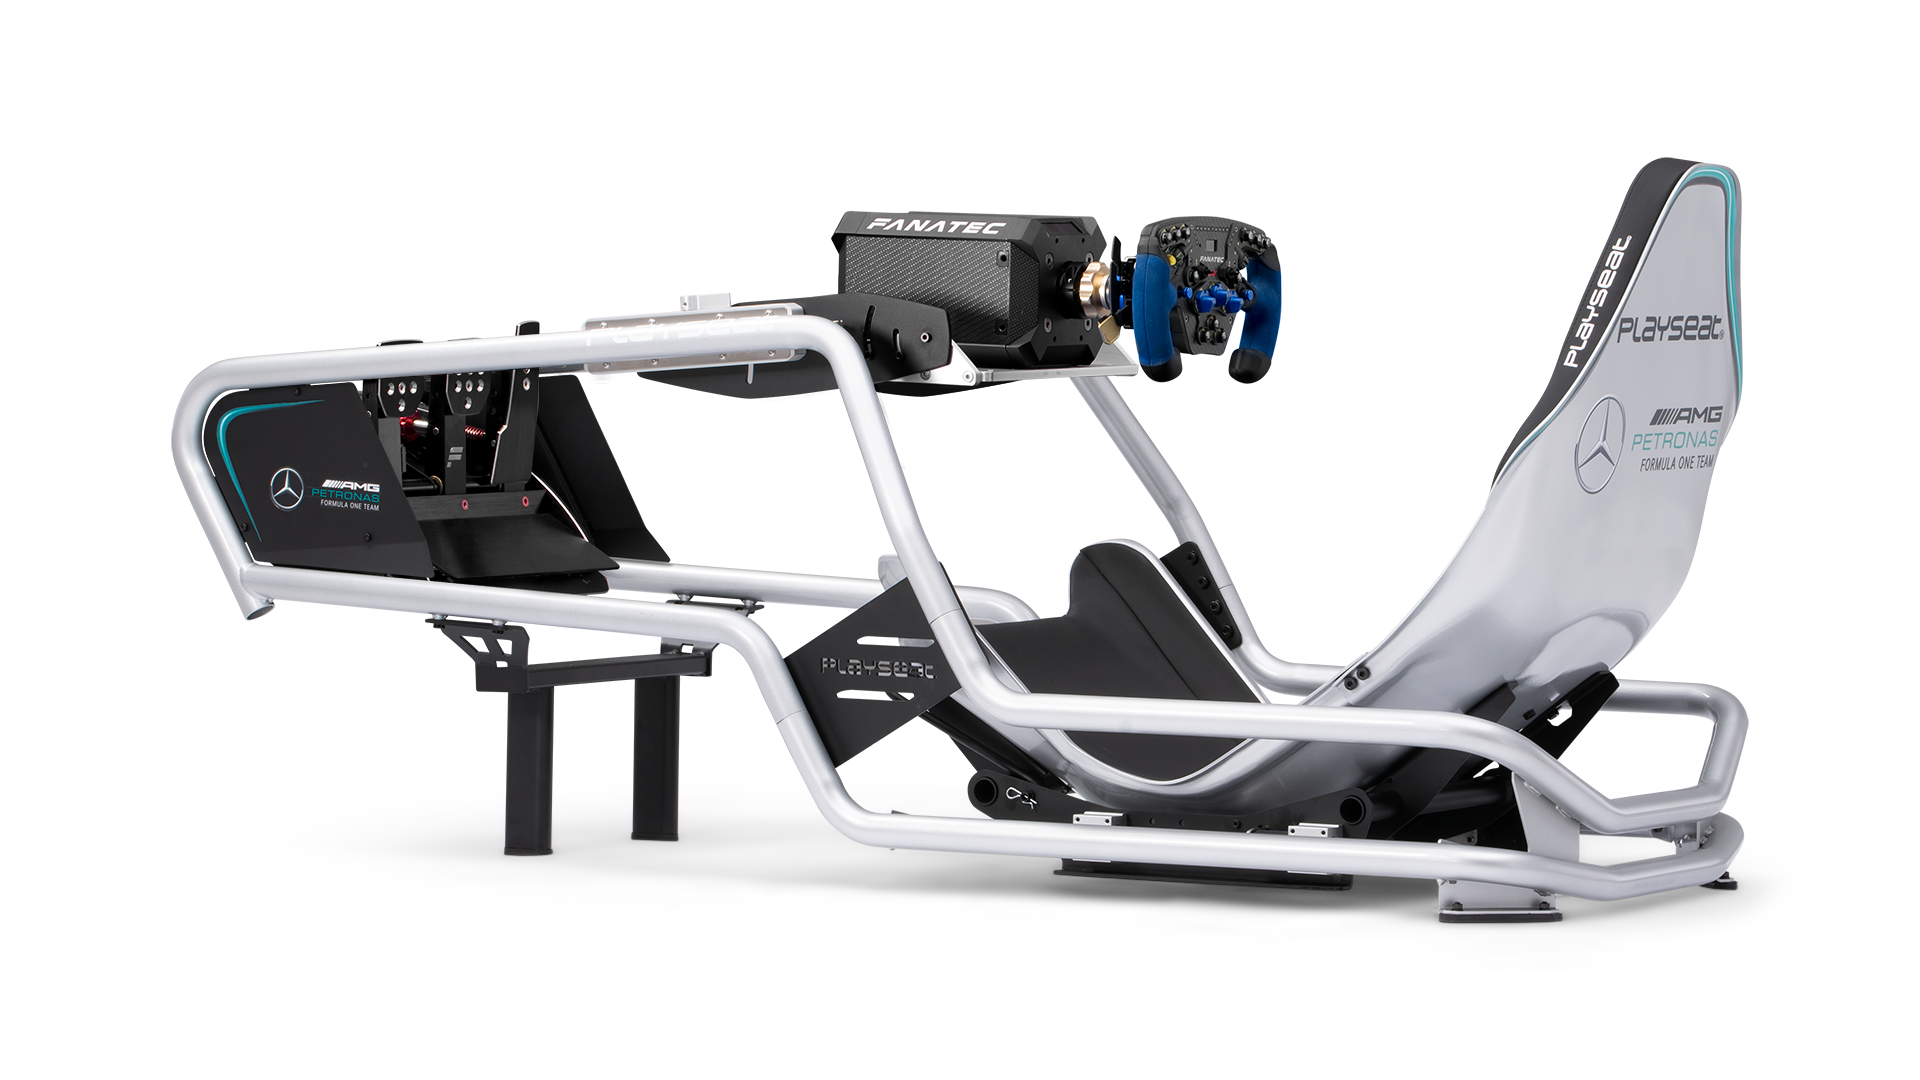 Playseat® Formula Intelligence Mercedes AMG  PlayseatStore - Playseat® -  Gaming-Sitze und Cockpits für Renn- und Flugsimulationen